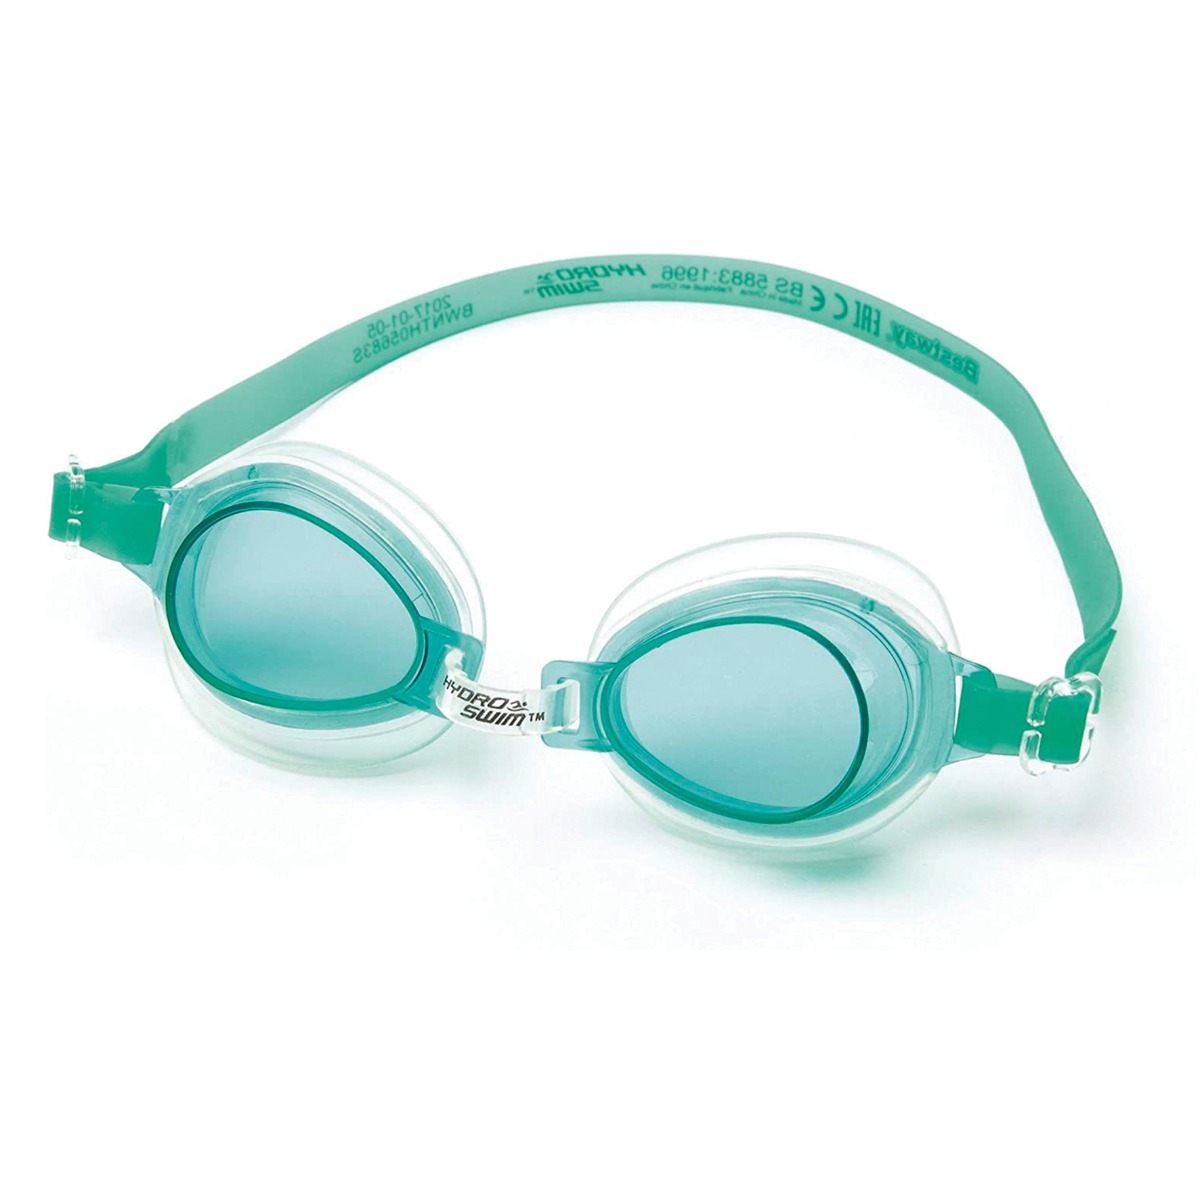 Vert - Ensemble de lunettes de natation pour enfants, équipement